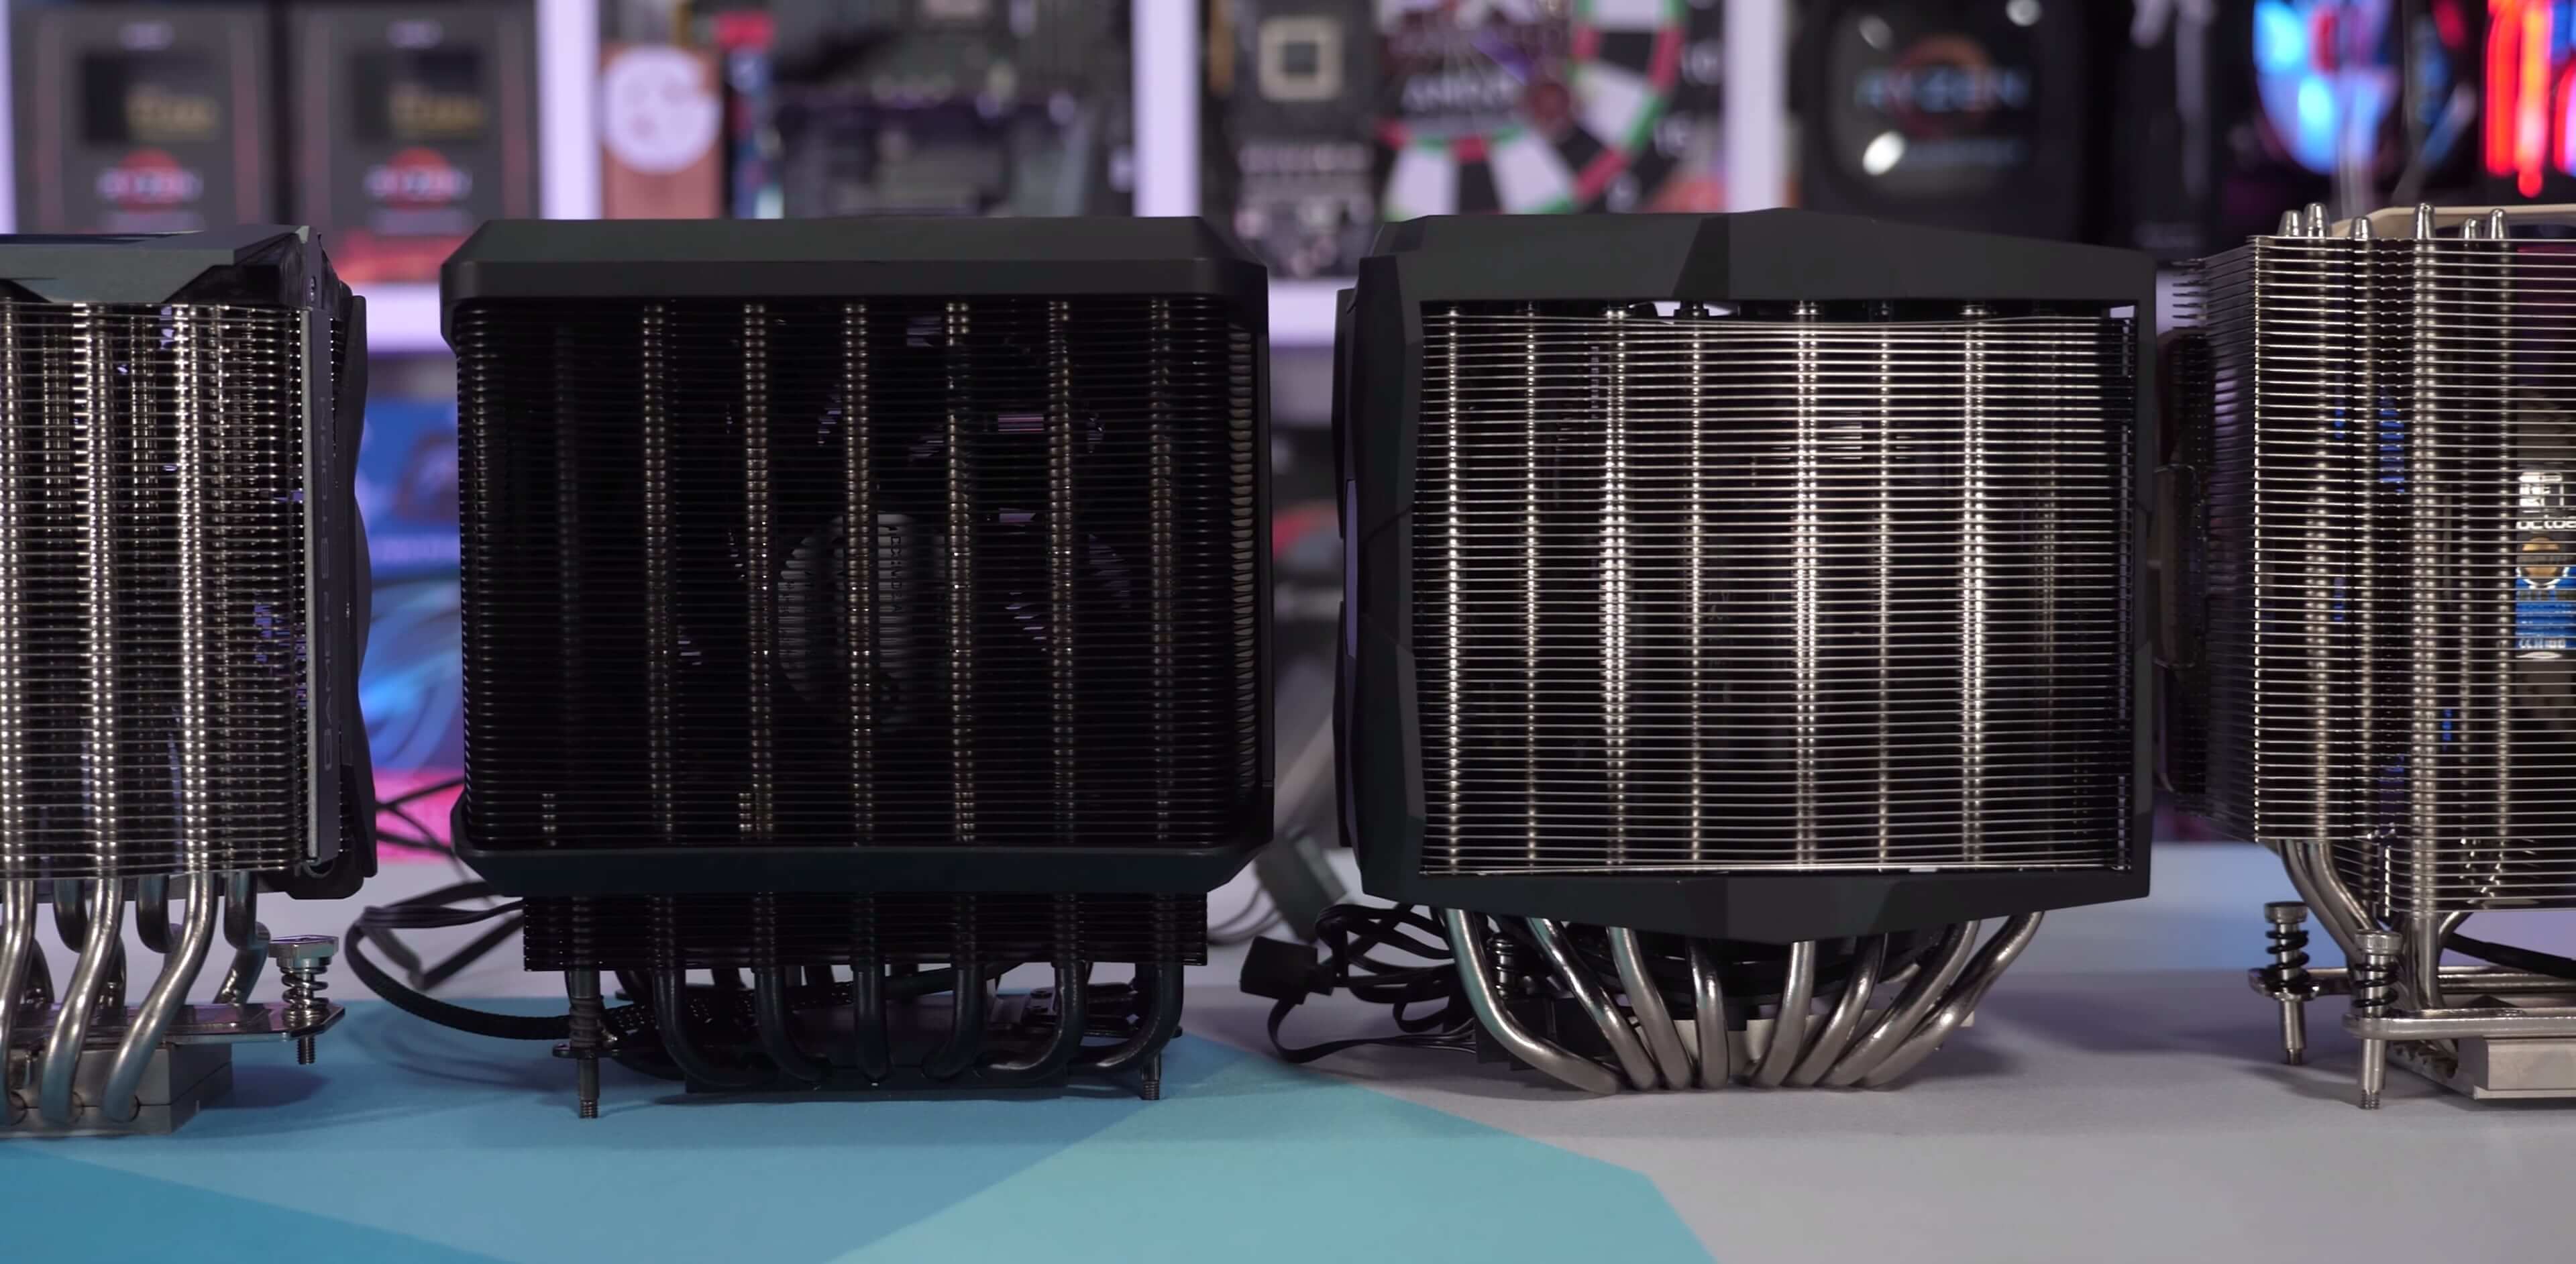 غرفة تبريد Big Boy: اختبار AMD Threadripper 3990X Cooler 64-core 10